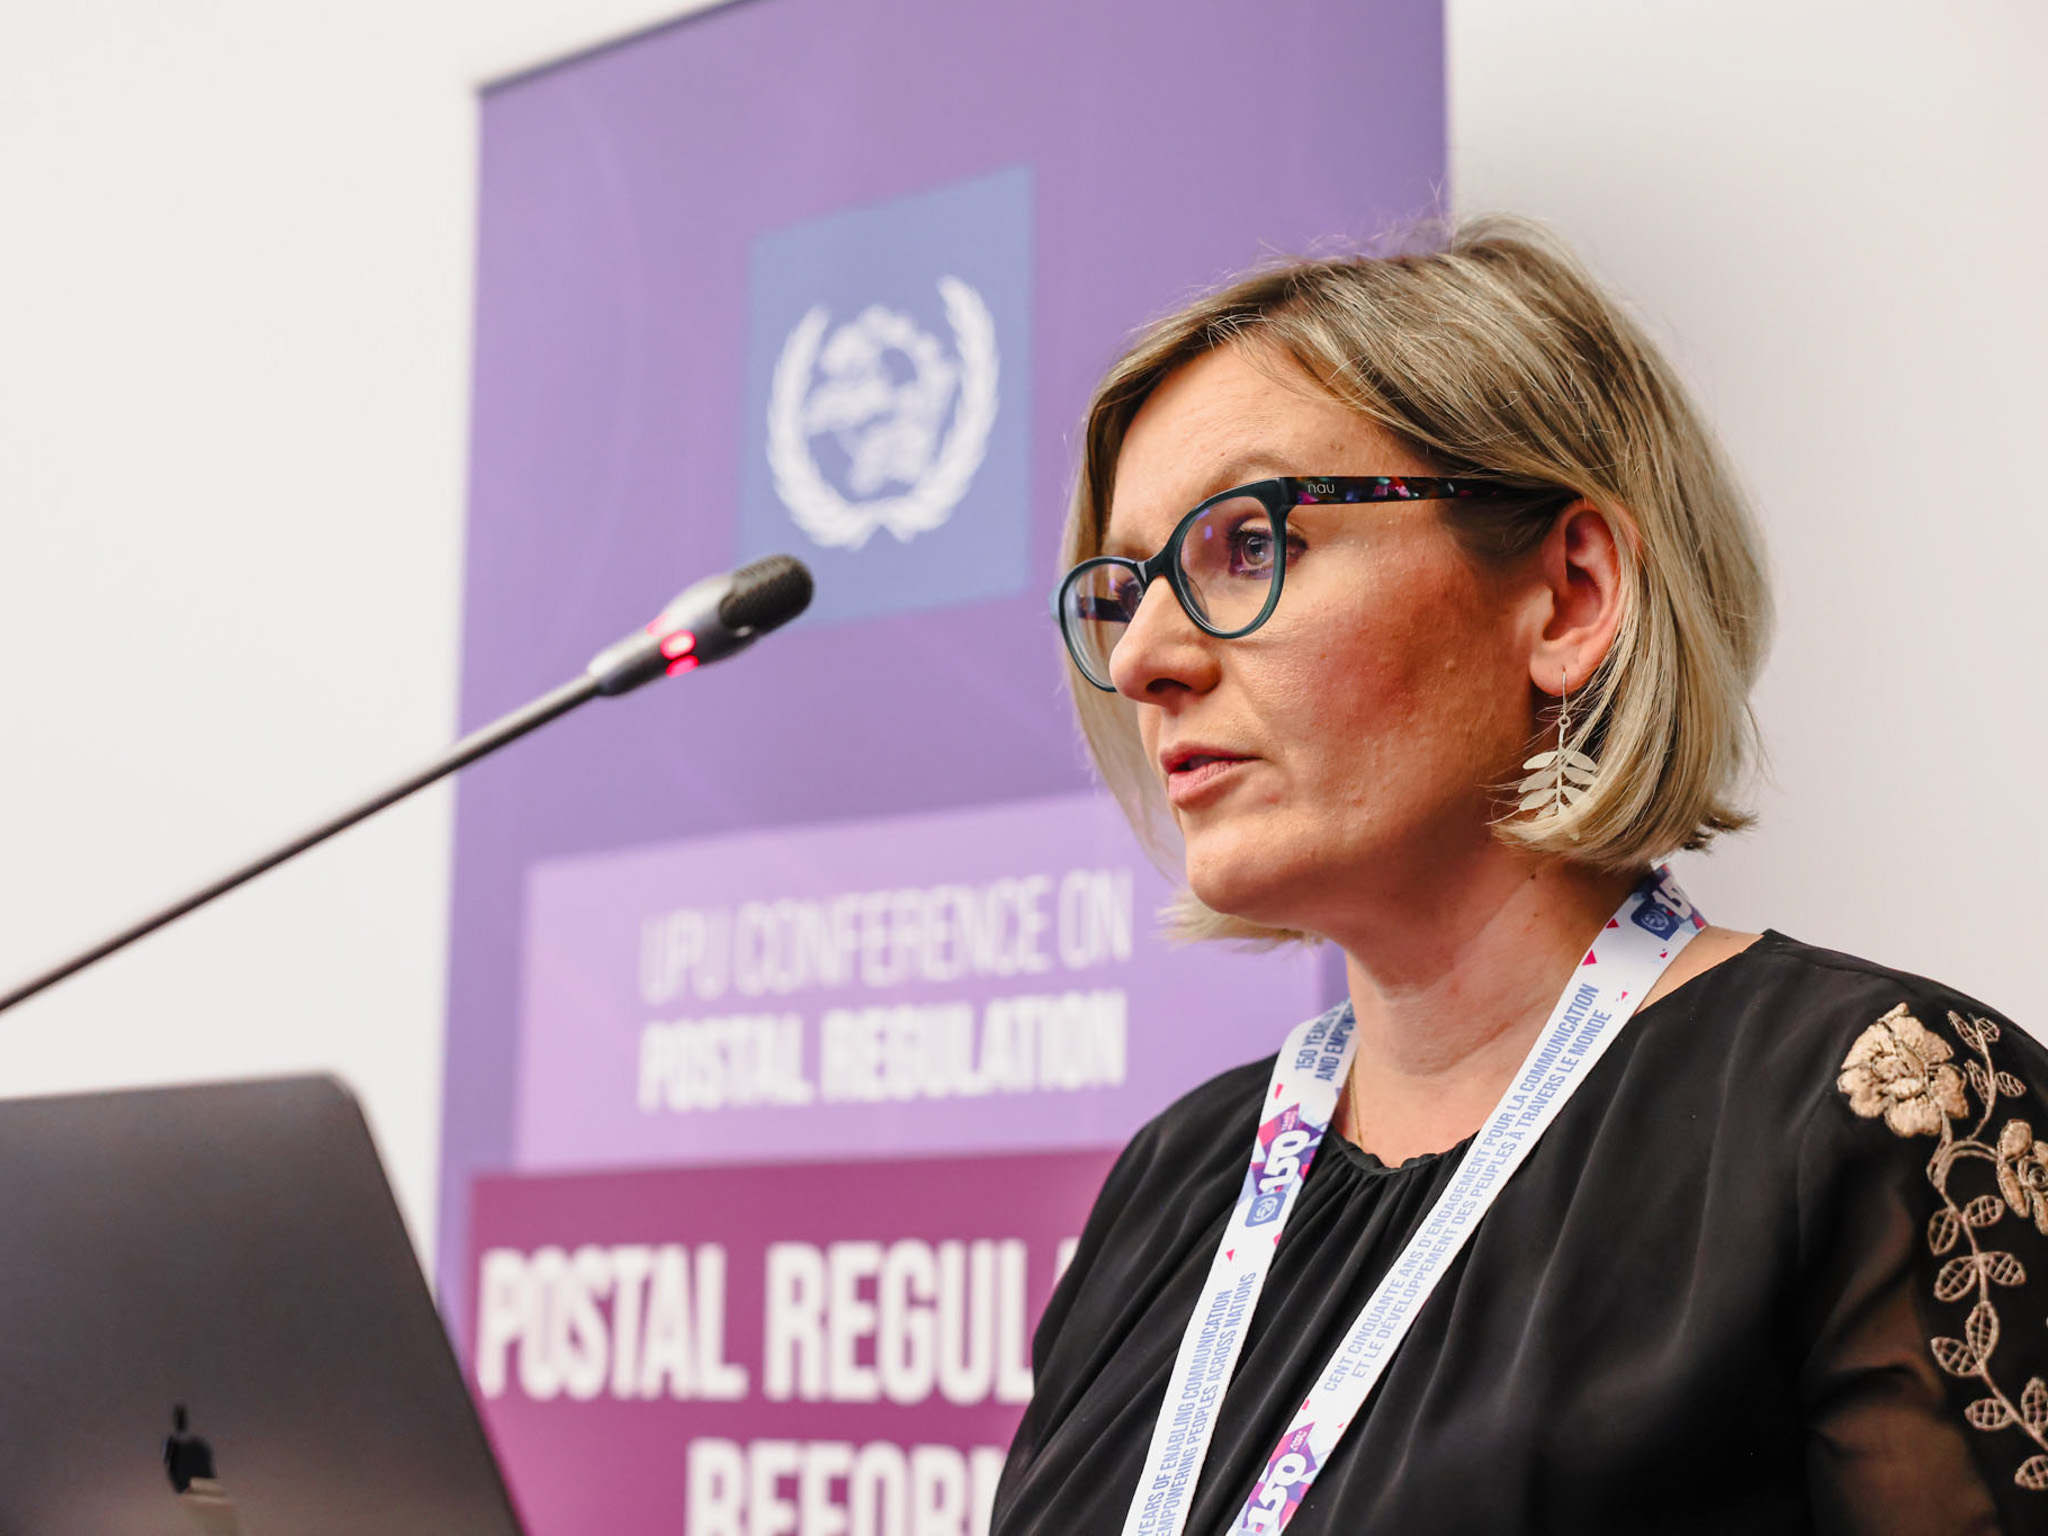 Conférence sur la réforme postale – L’UPU s’appuie sur les perspectives réglementaires mondiales pour redéfinir les services postaux